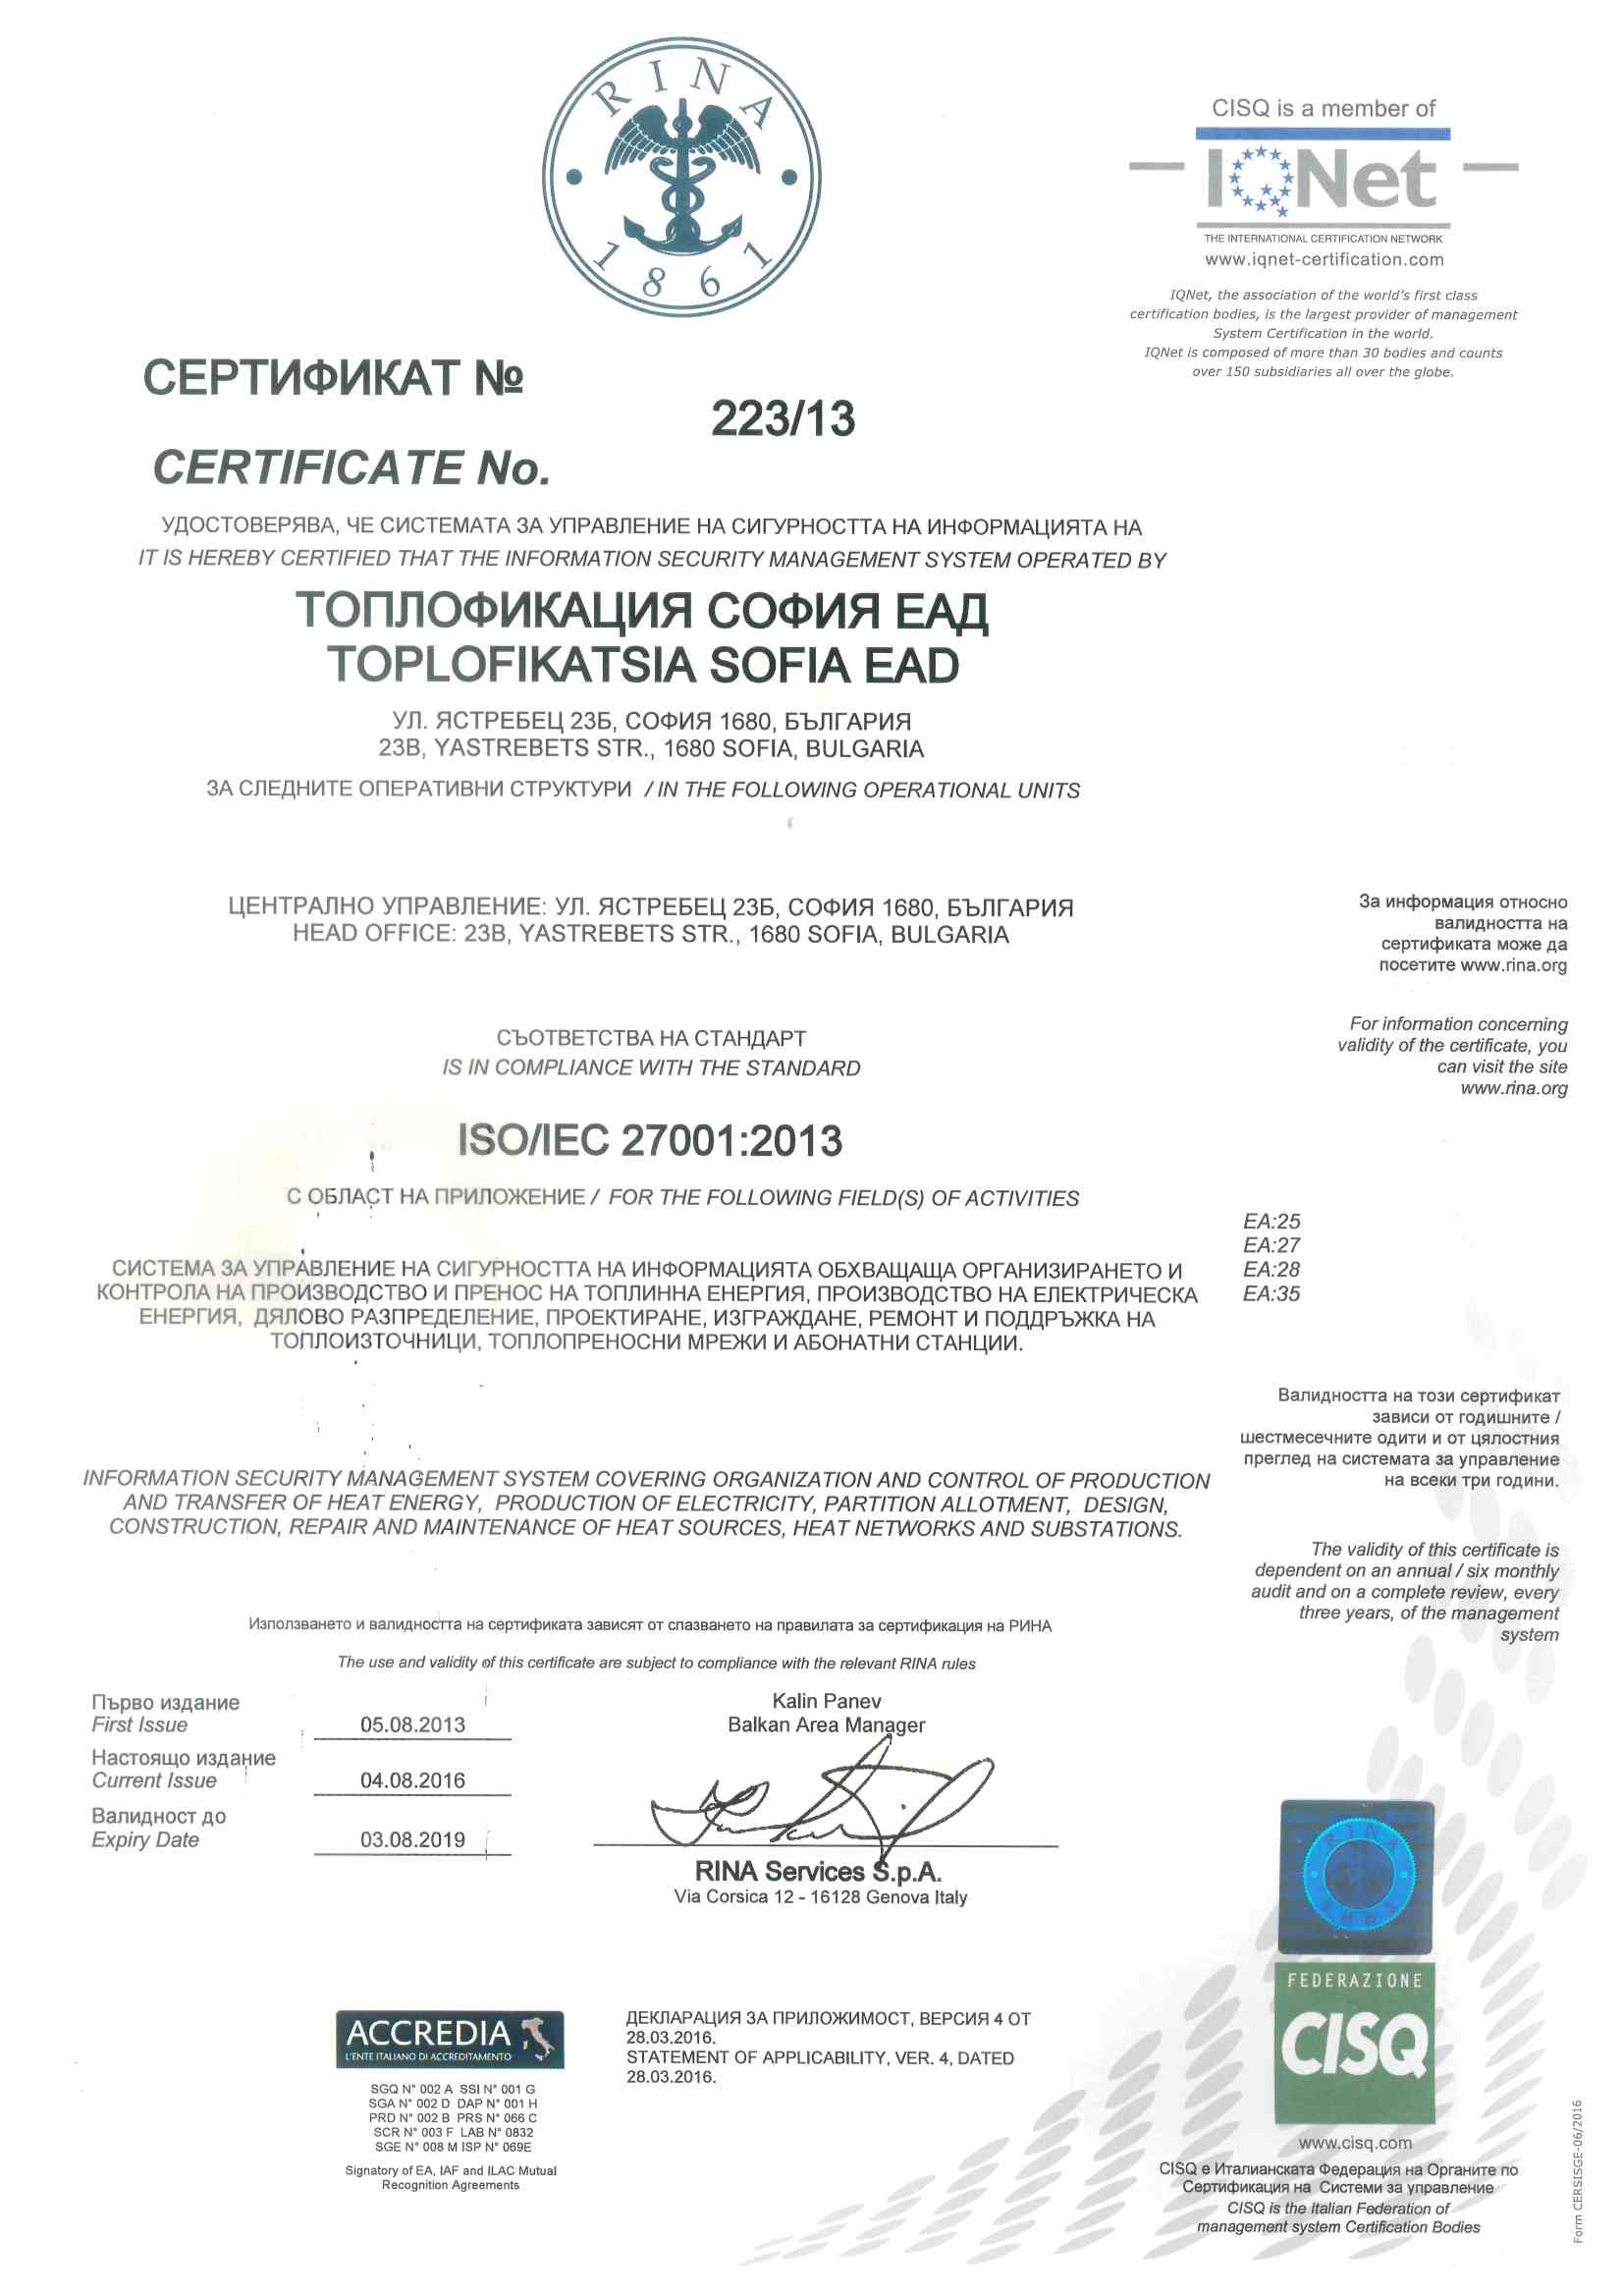 Certificate 223/13